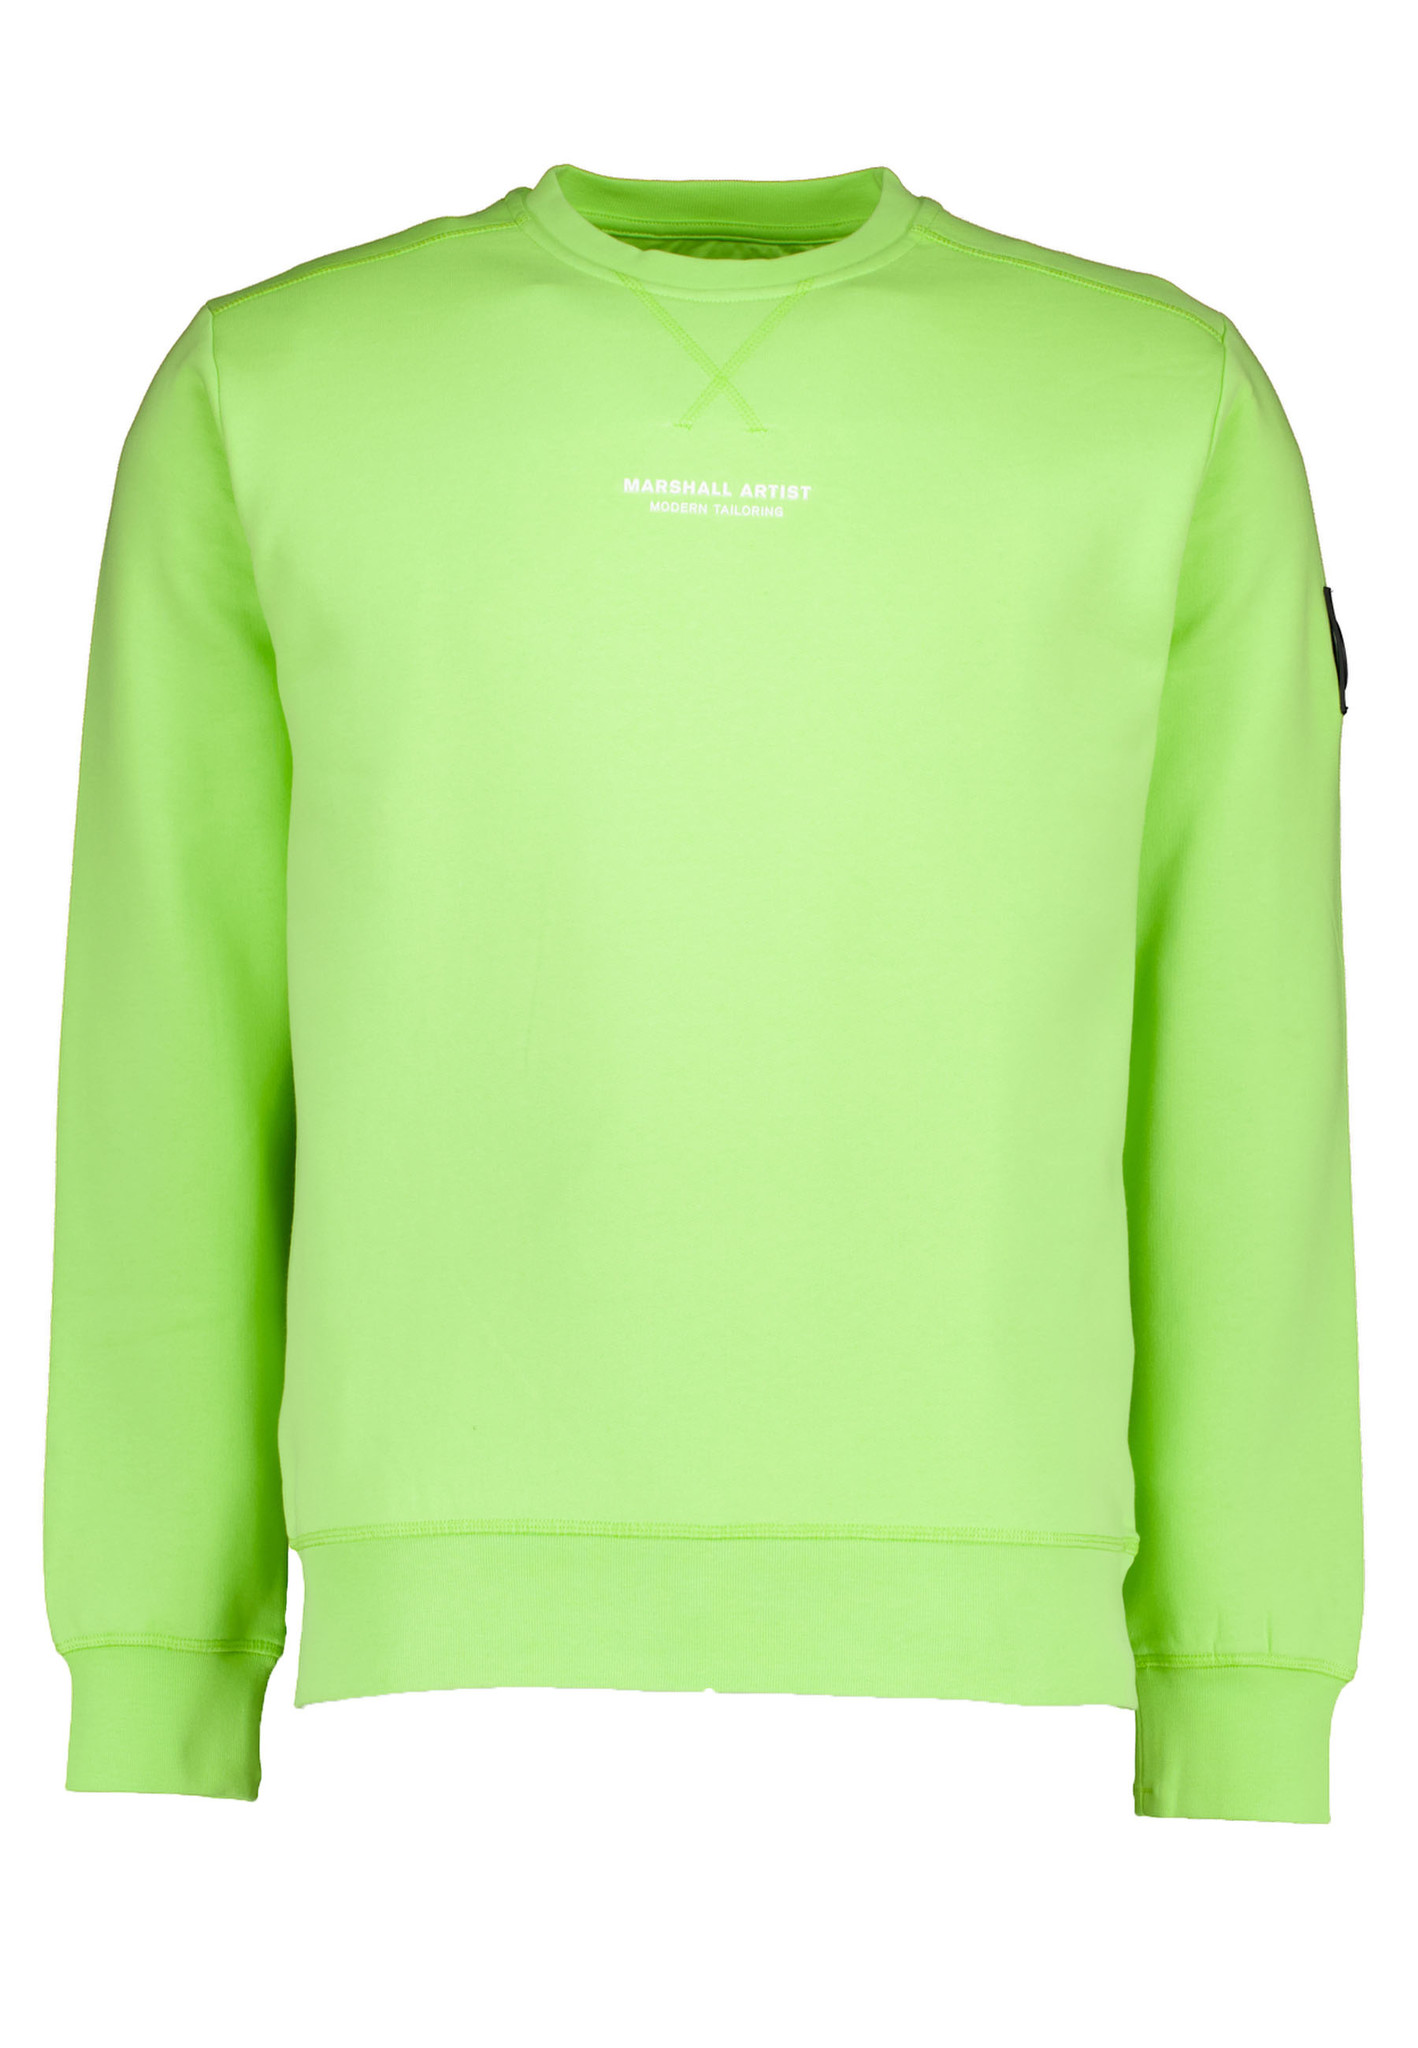 Marshall Artist sweaters groen Heren maat S